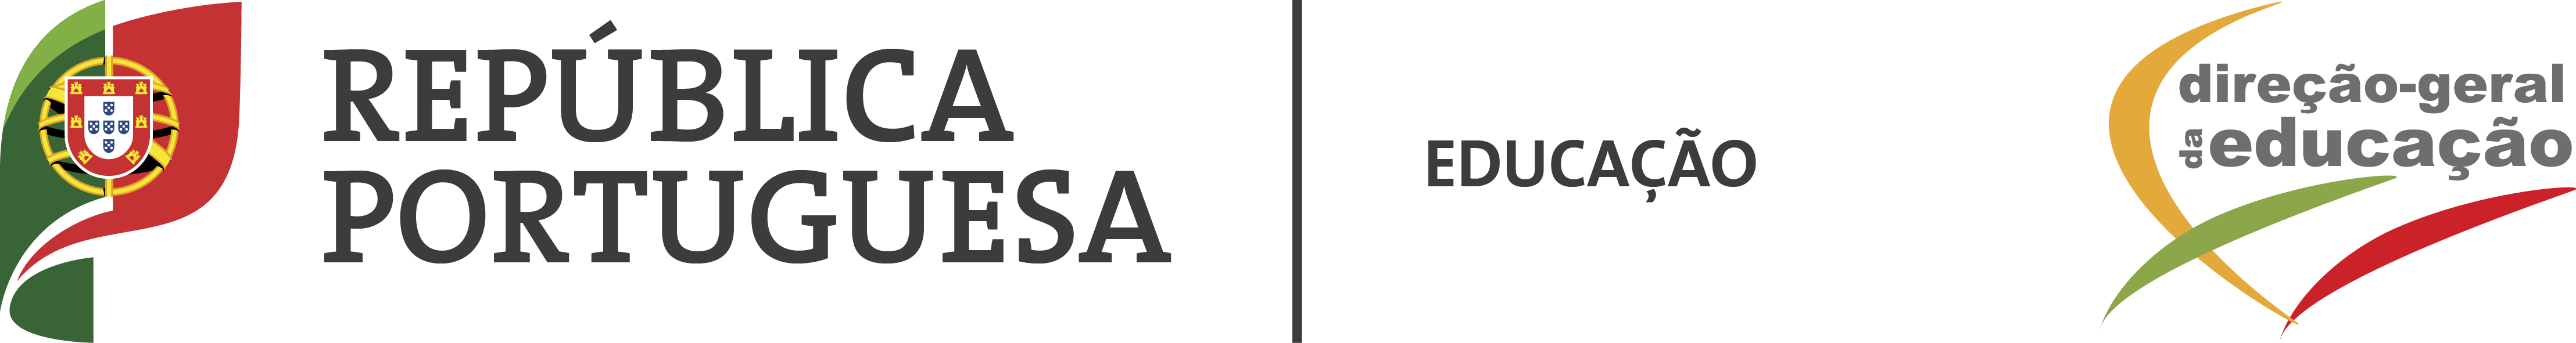 Logotipo Direção-Geral da Educação